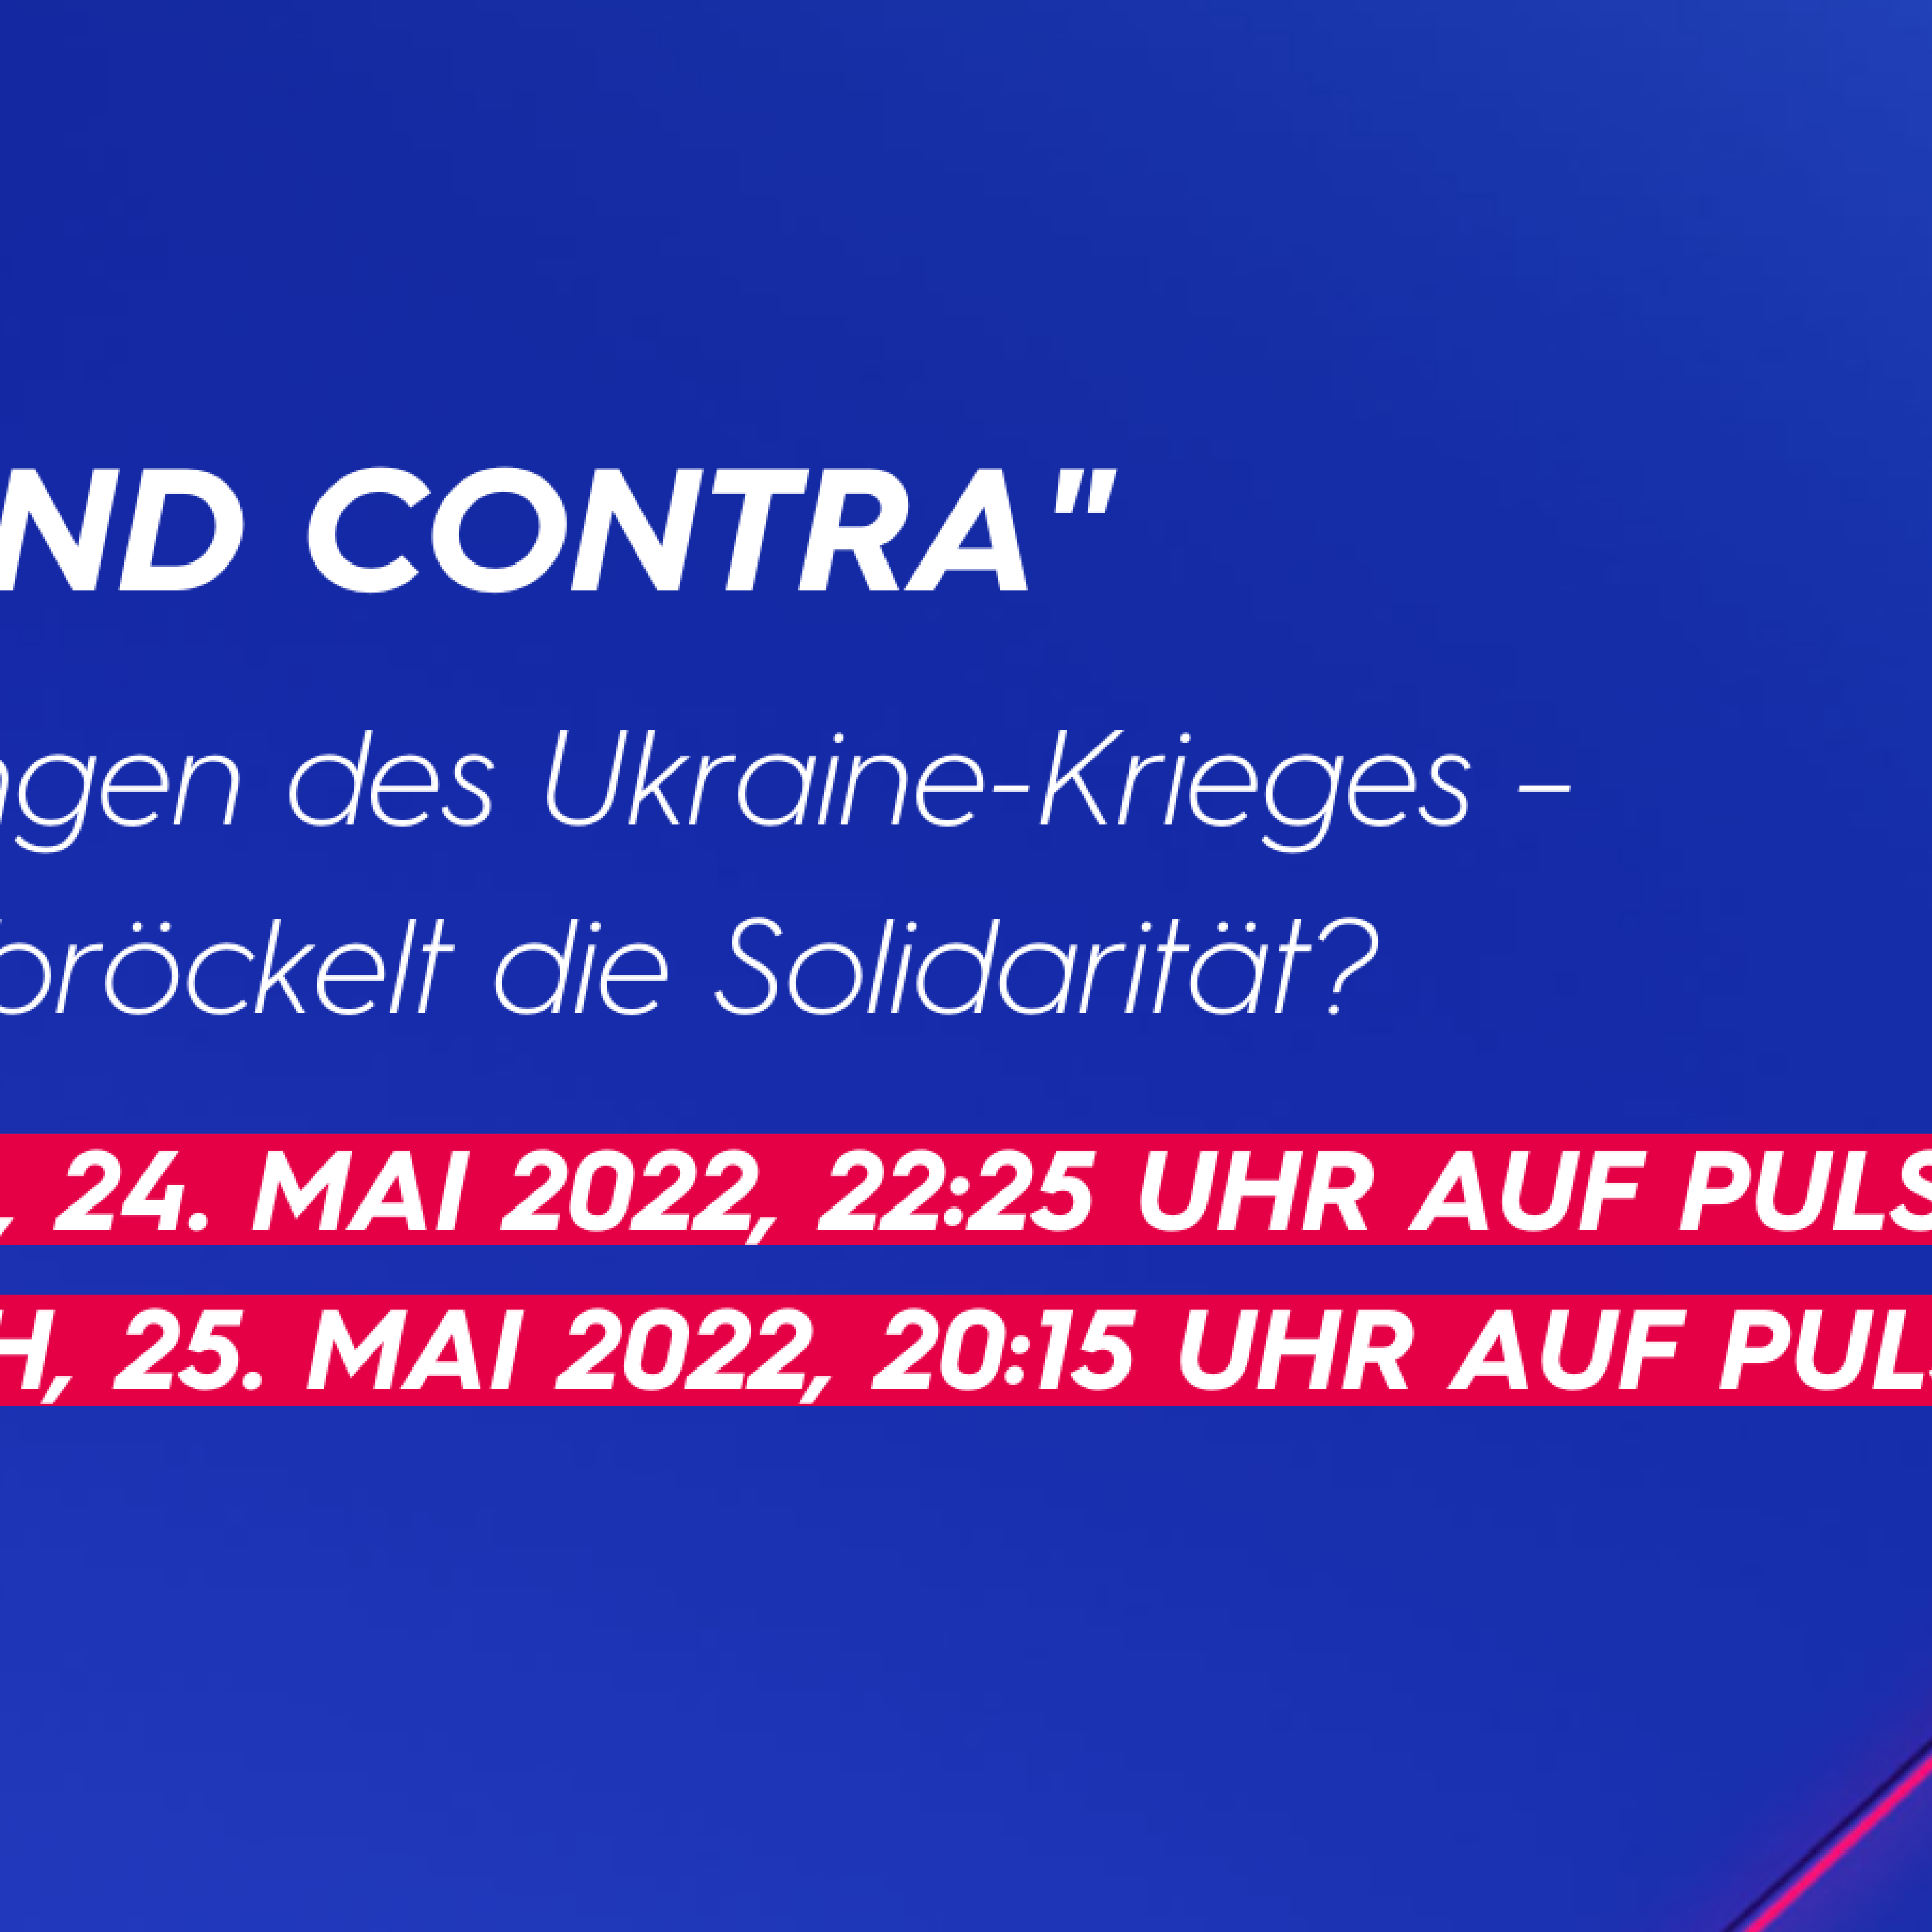 PRO UND CONTRA: Auswirkungen des Ukraine-Krieges – Wie sehr bröckelt die Solidarität? - Dienstag, 24. Mai 2022, 22:25 Uhr auf PULS 4 - Mittwoch, 25. Mai 2022, 20:15 Uhr auf PULS 24